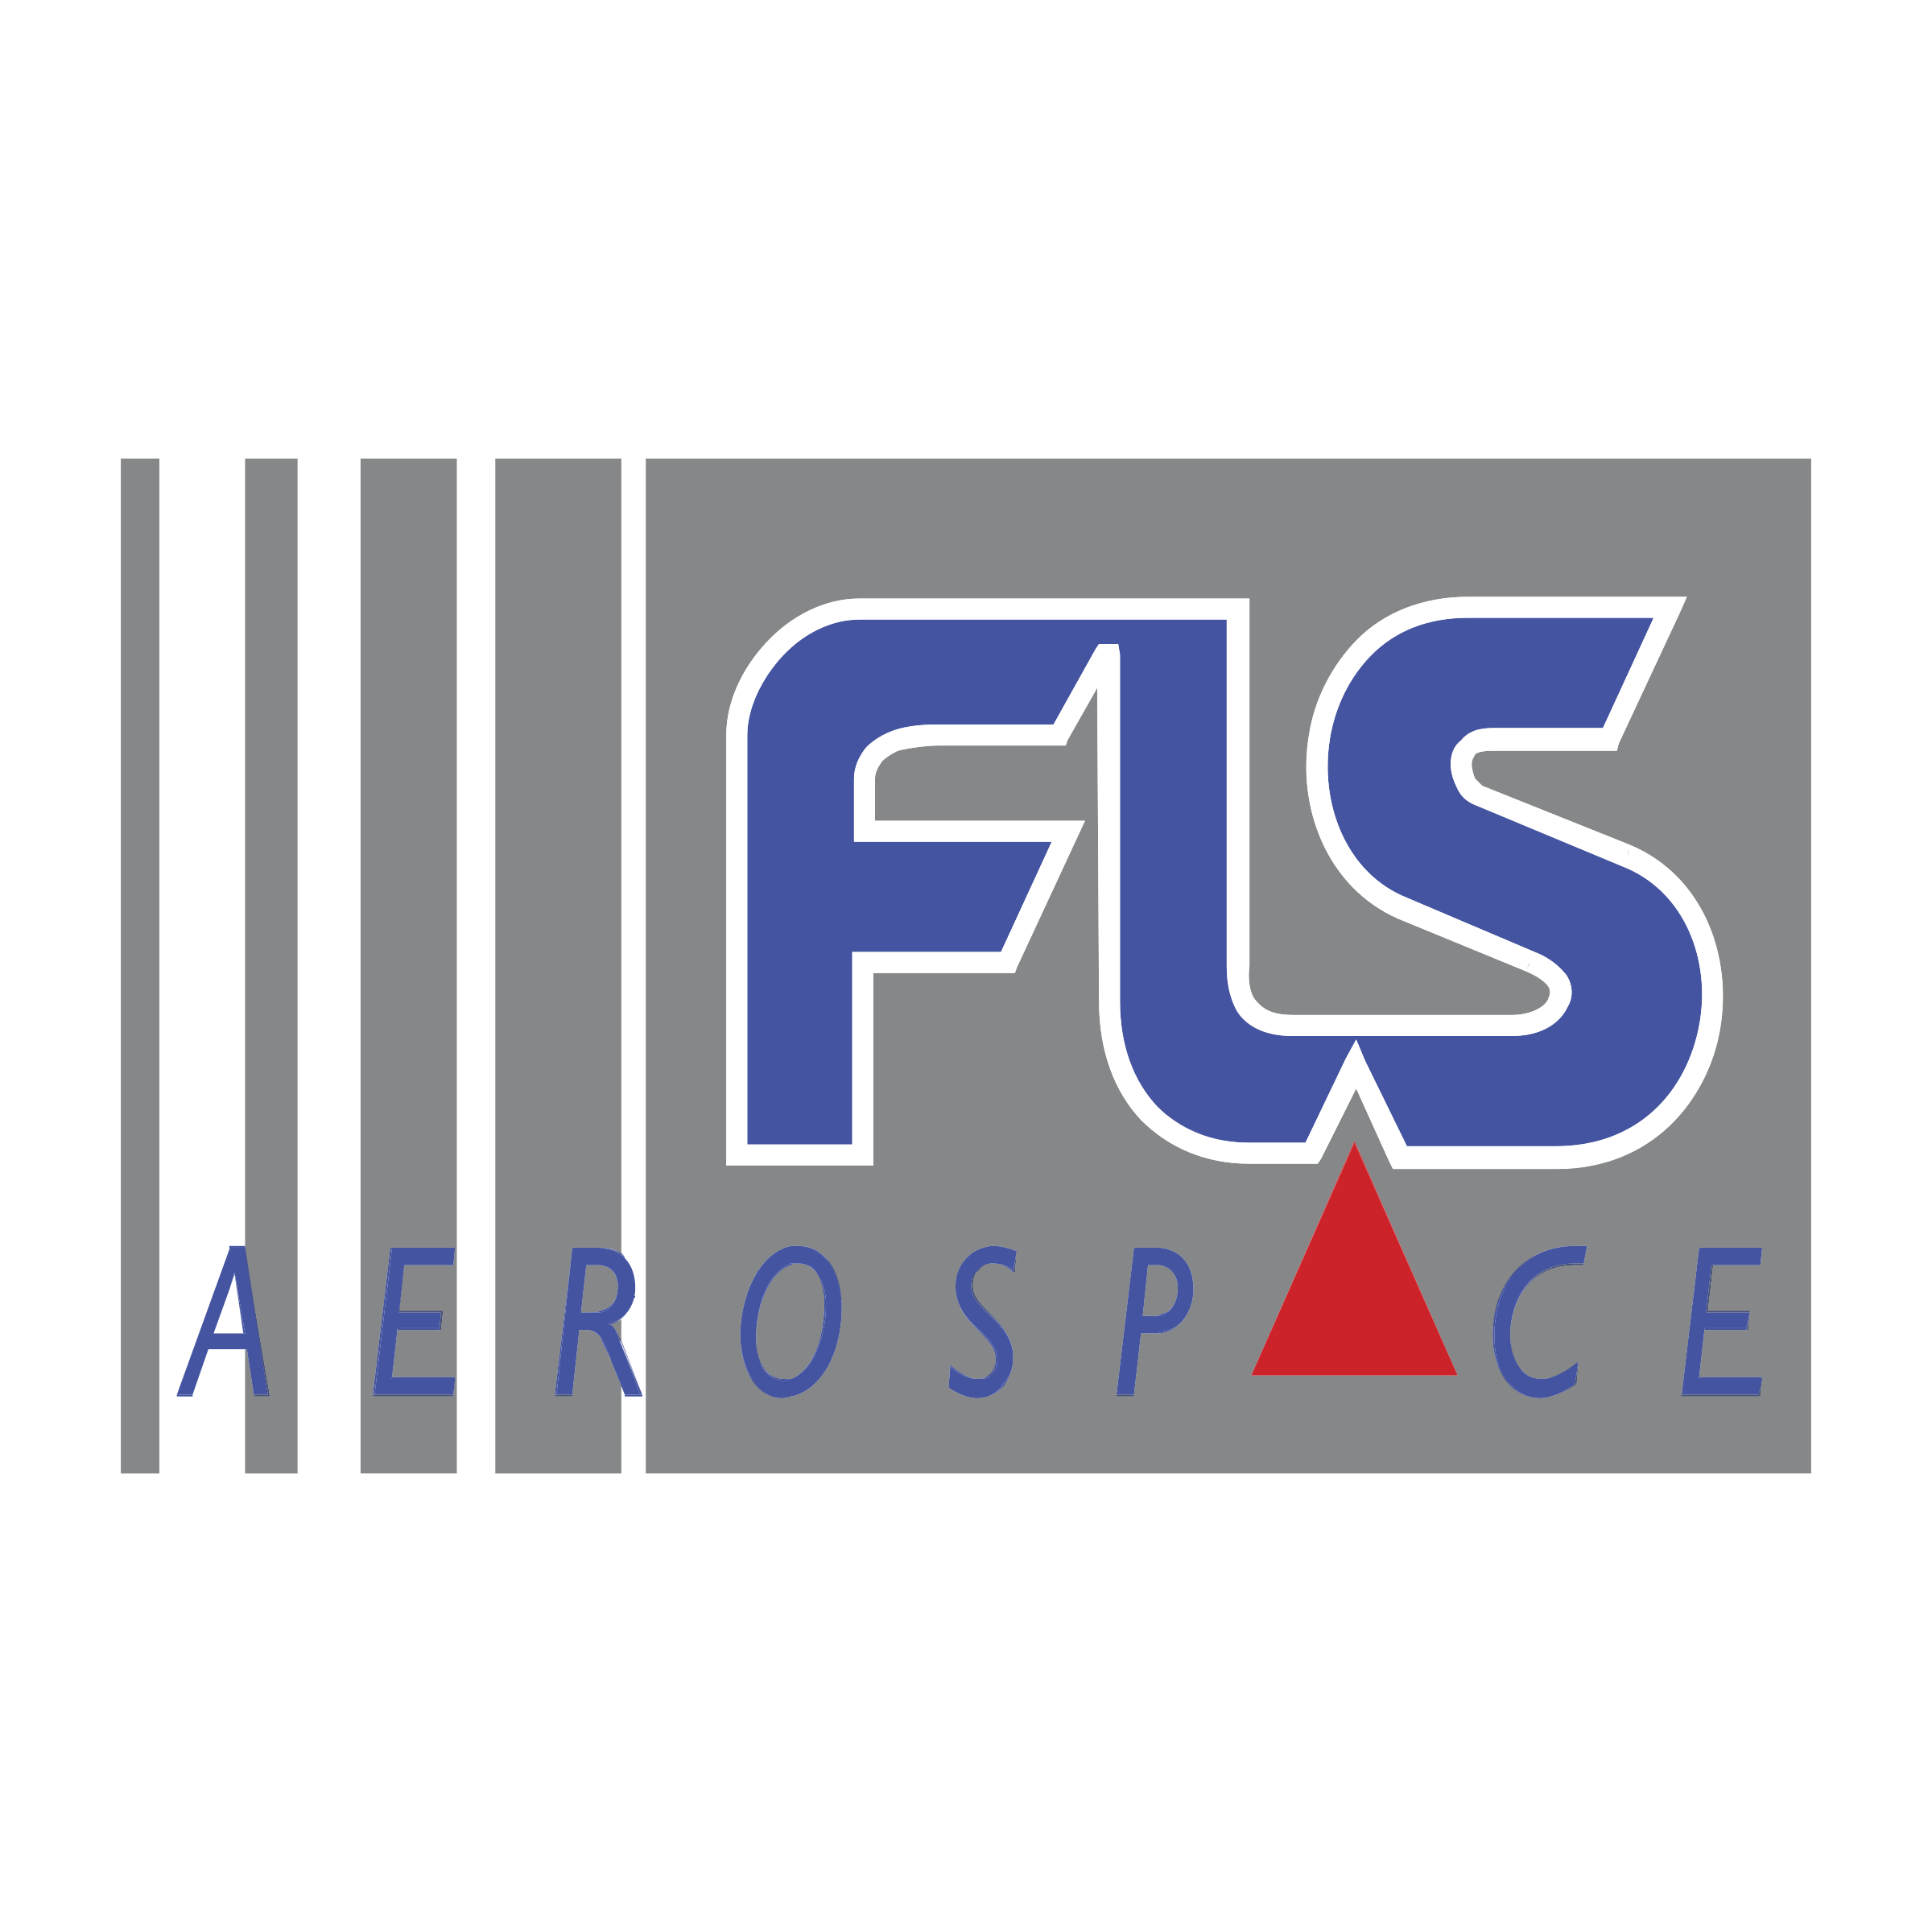 FLS Logo - FLS Aerospace Logo PNG Transparent & SVG Vector